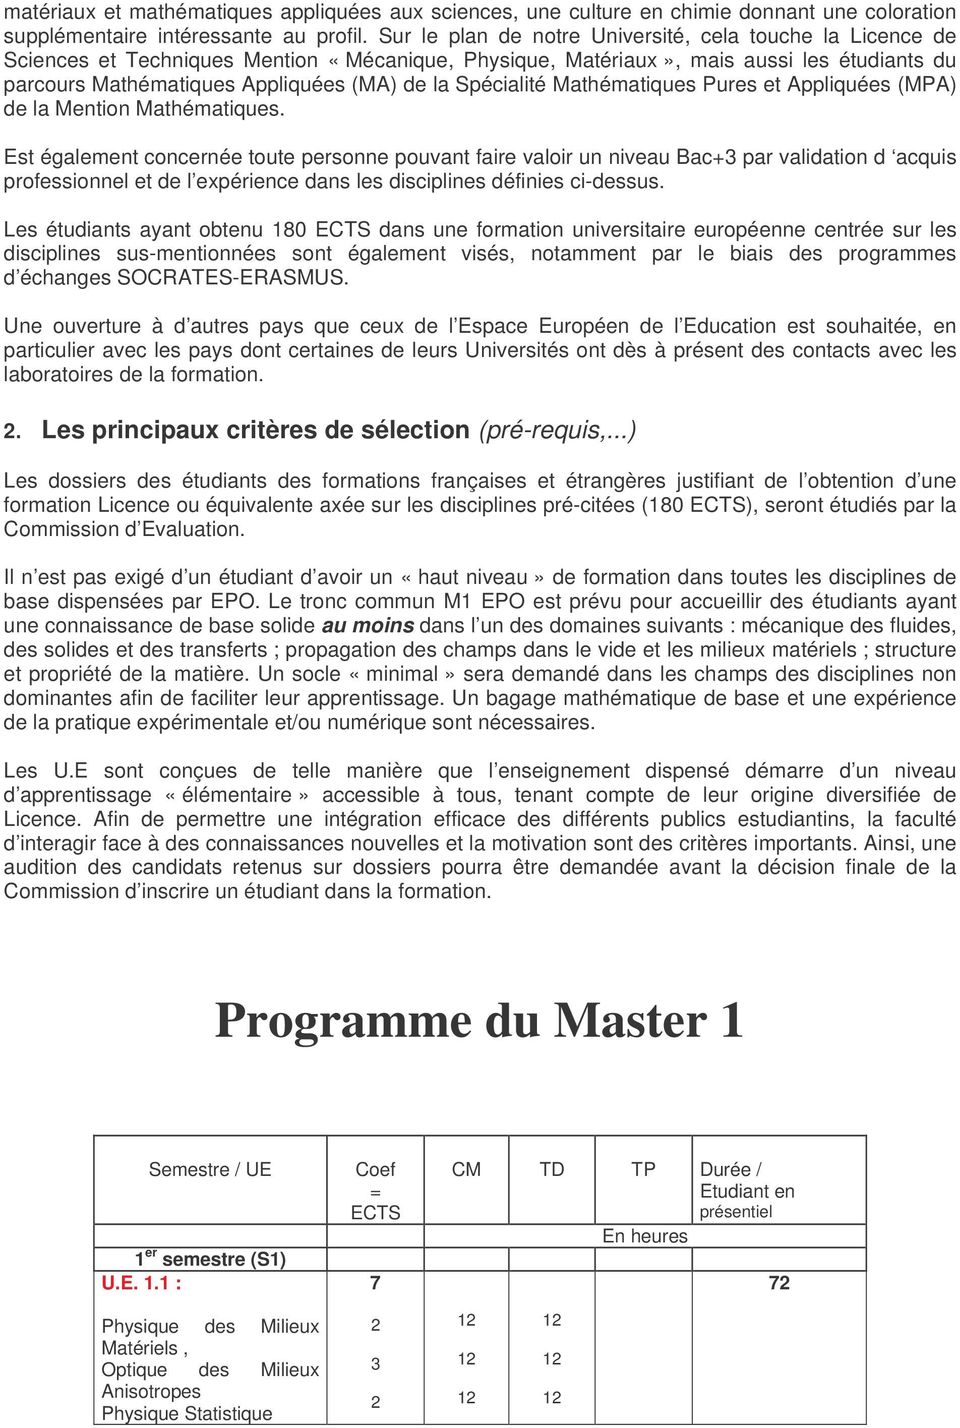 Mathématiques Pures et Appliquées (MPA) de la Mathématiques.